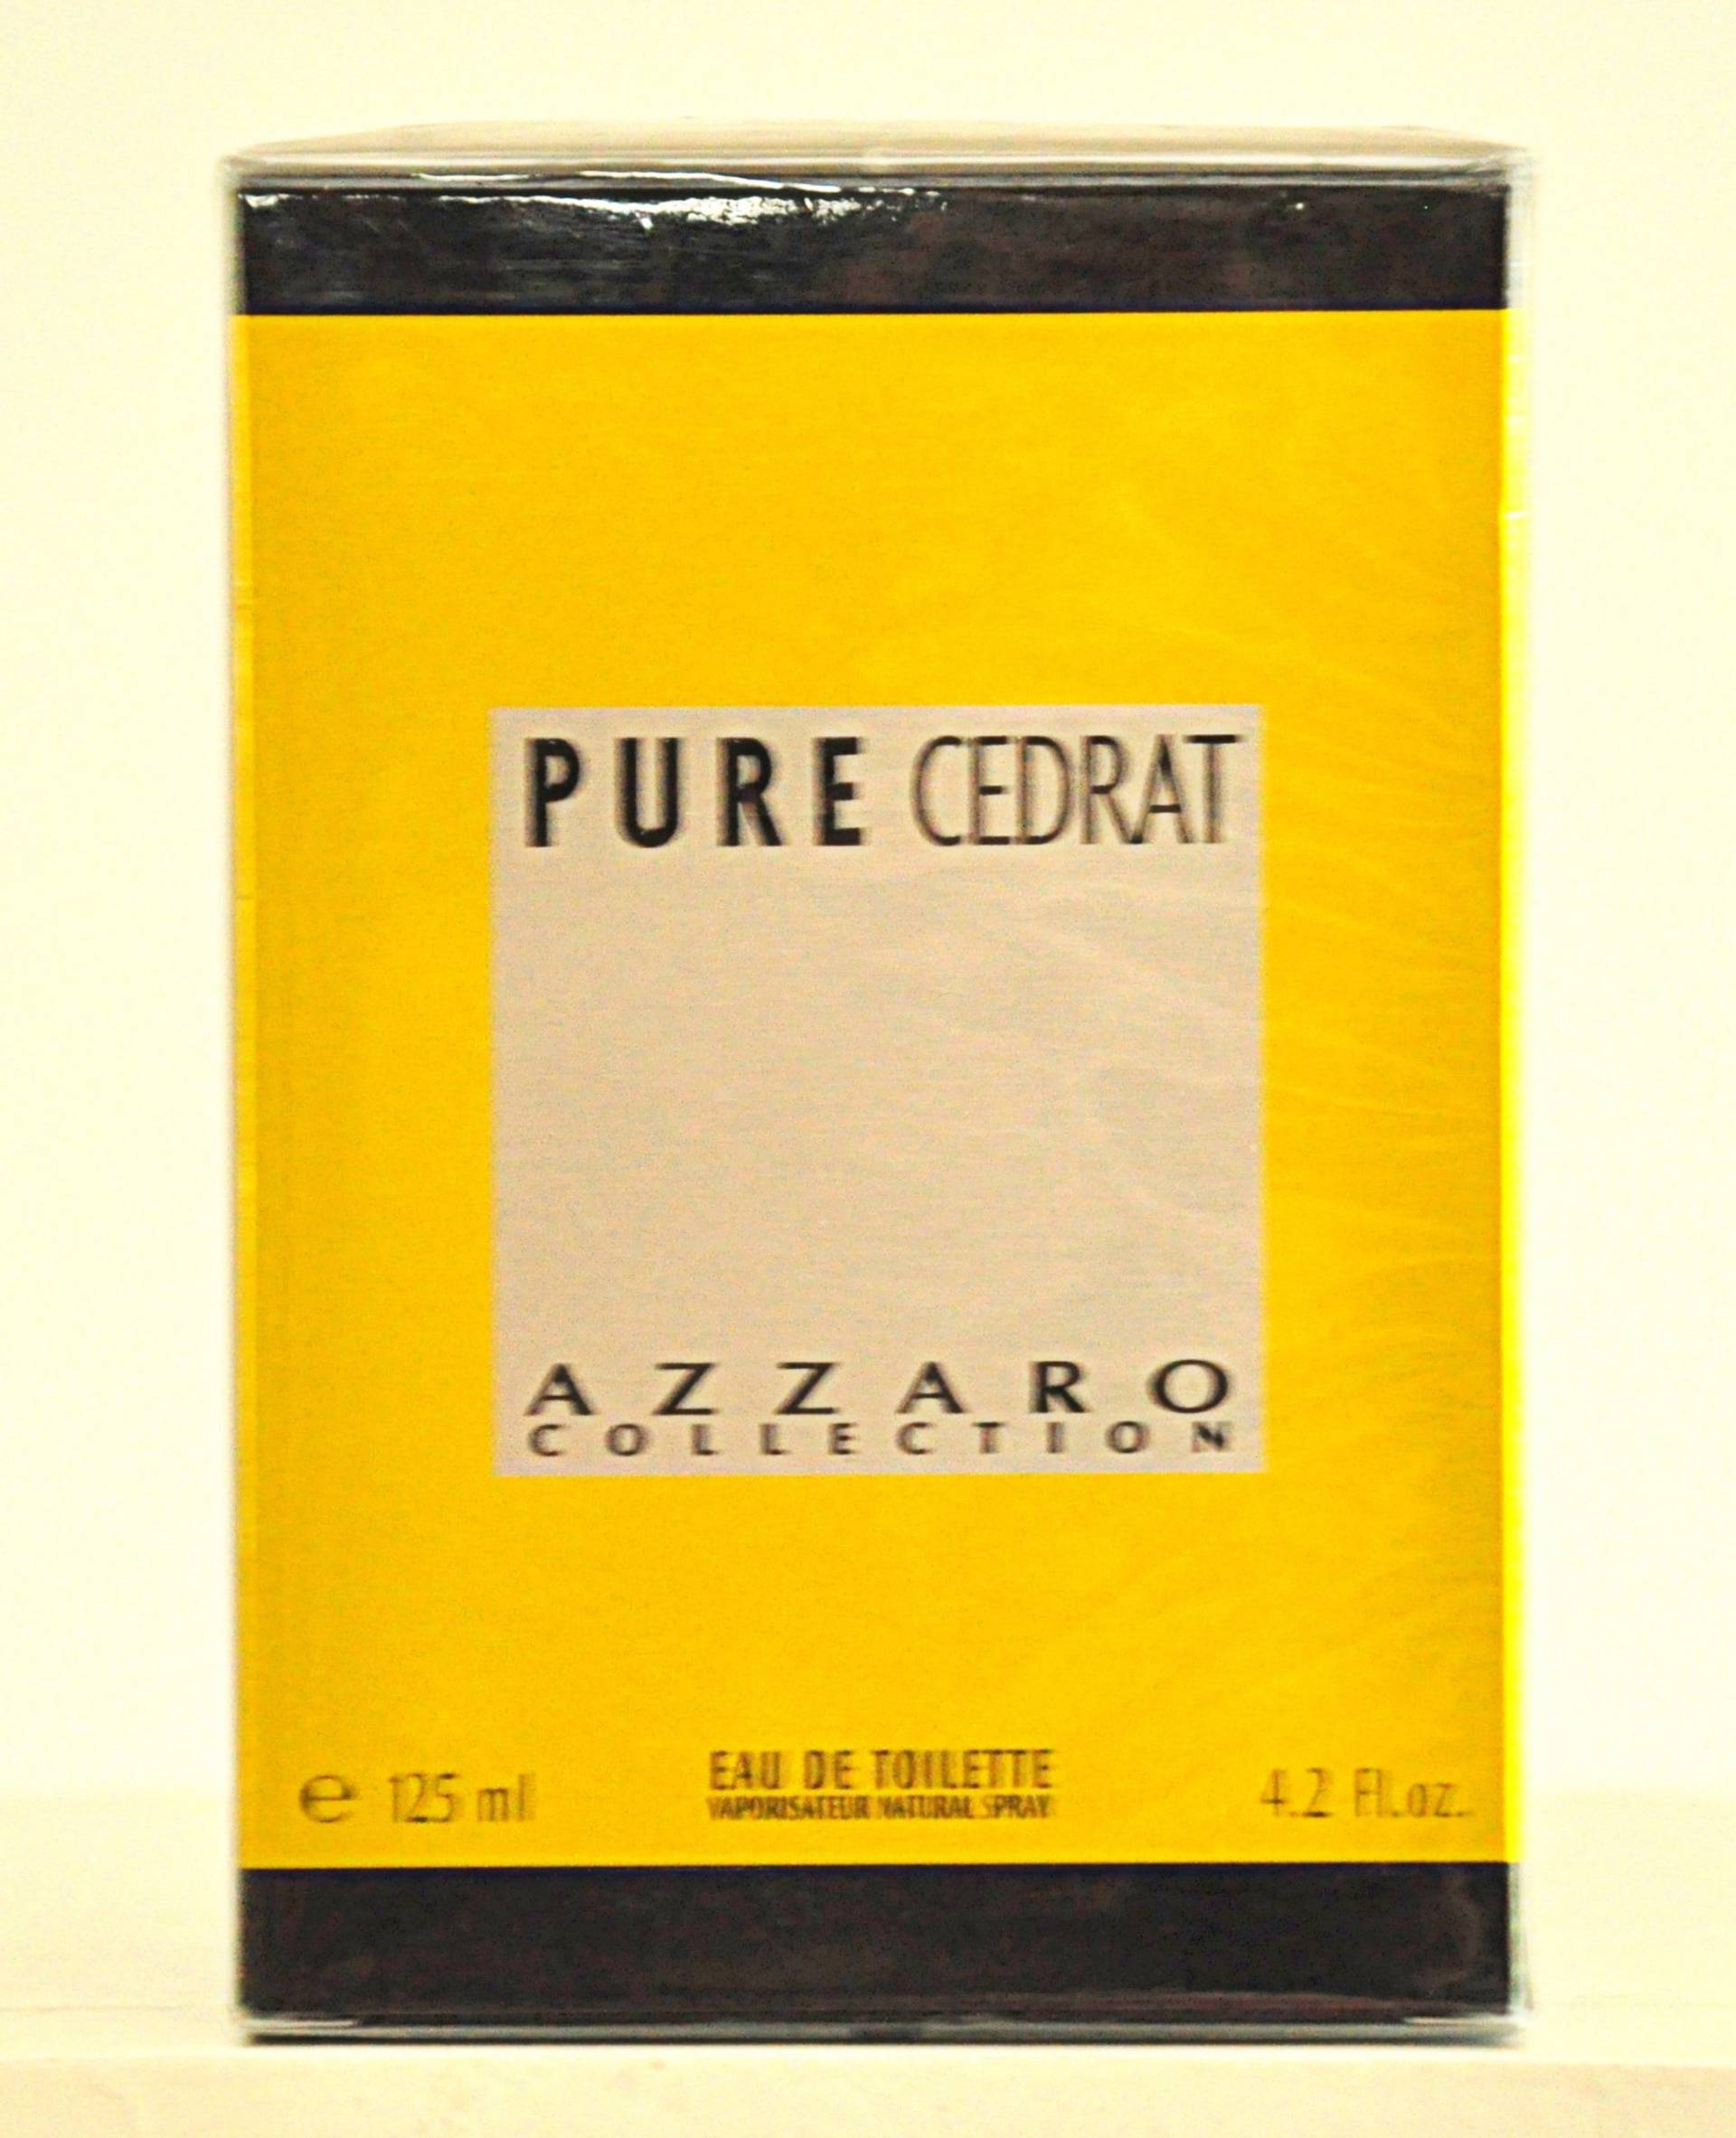 Azzaro Pure Cedrat Eau De Toilette Edt 125Ml Spray Parfüm Mann Rare Vintage Neu Versiegelt von Etsy - YourVintagePerfume